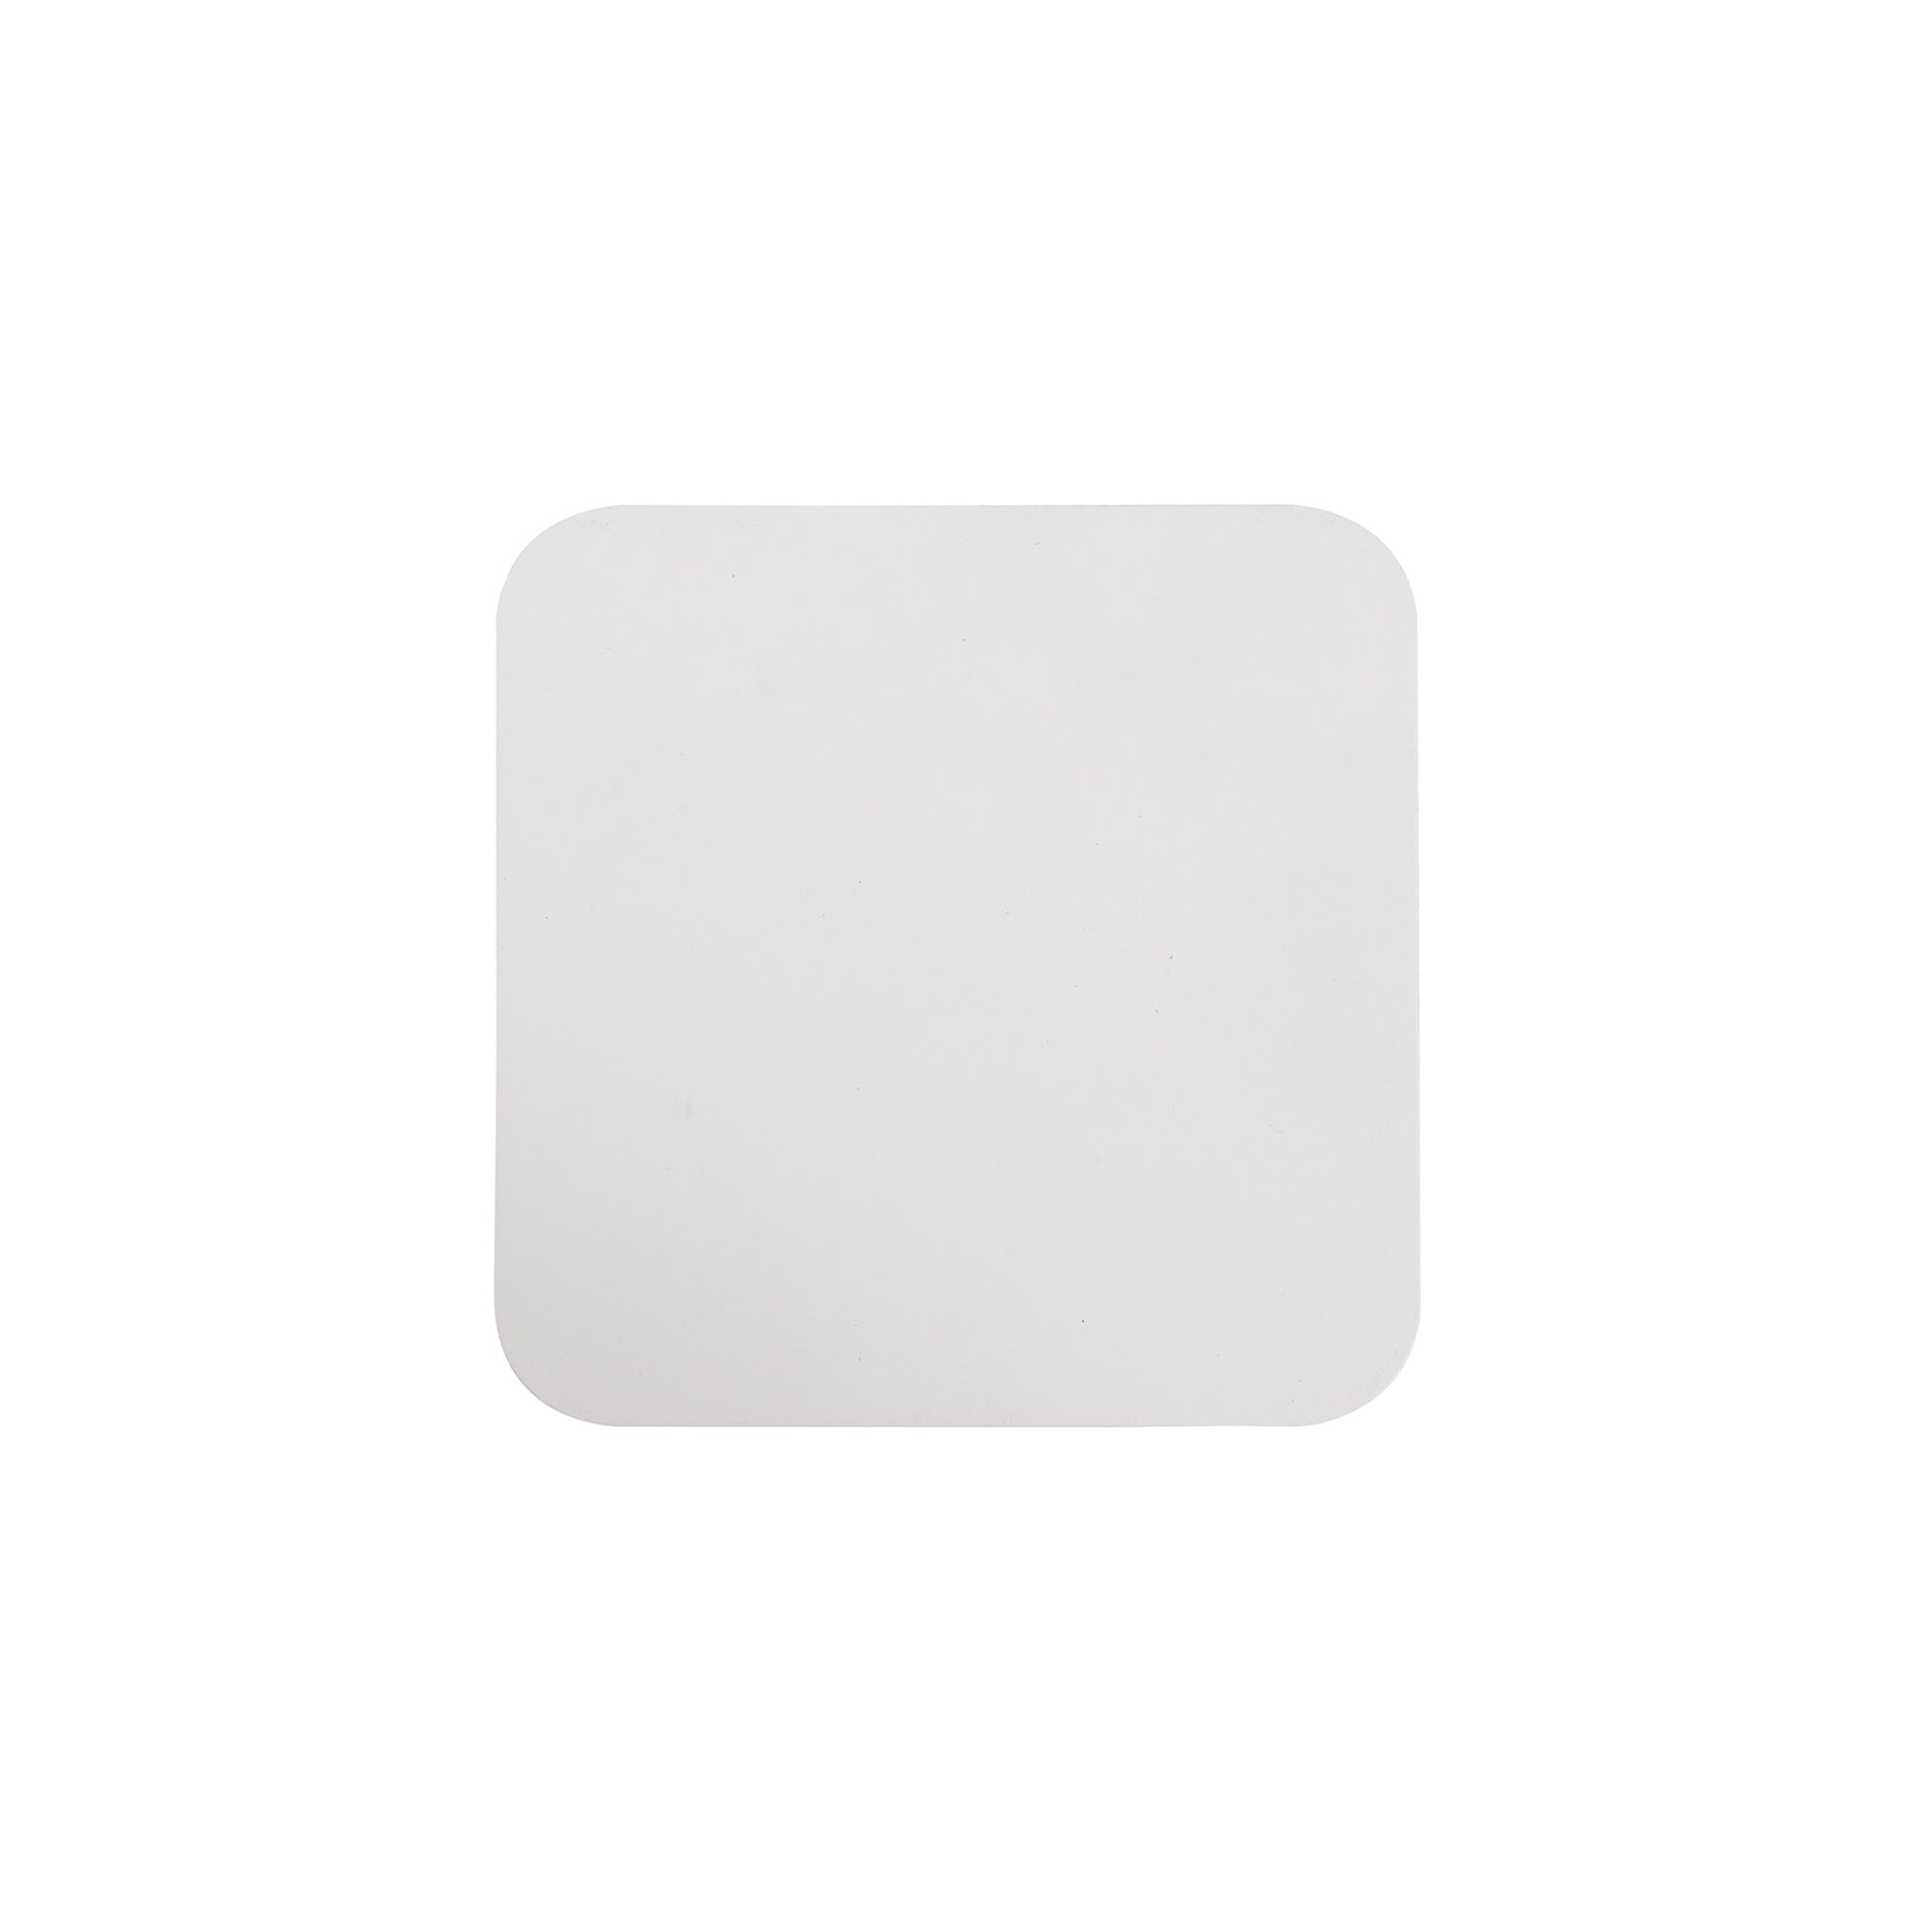 Modus 150mm Non-Electric Square Plate, Sand White